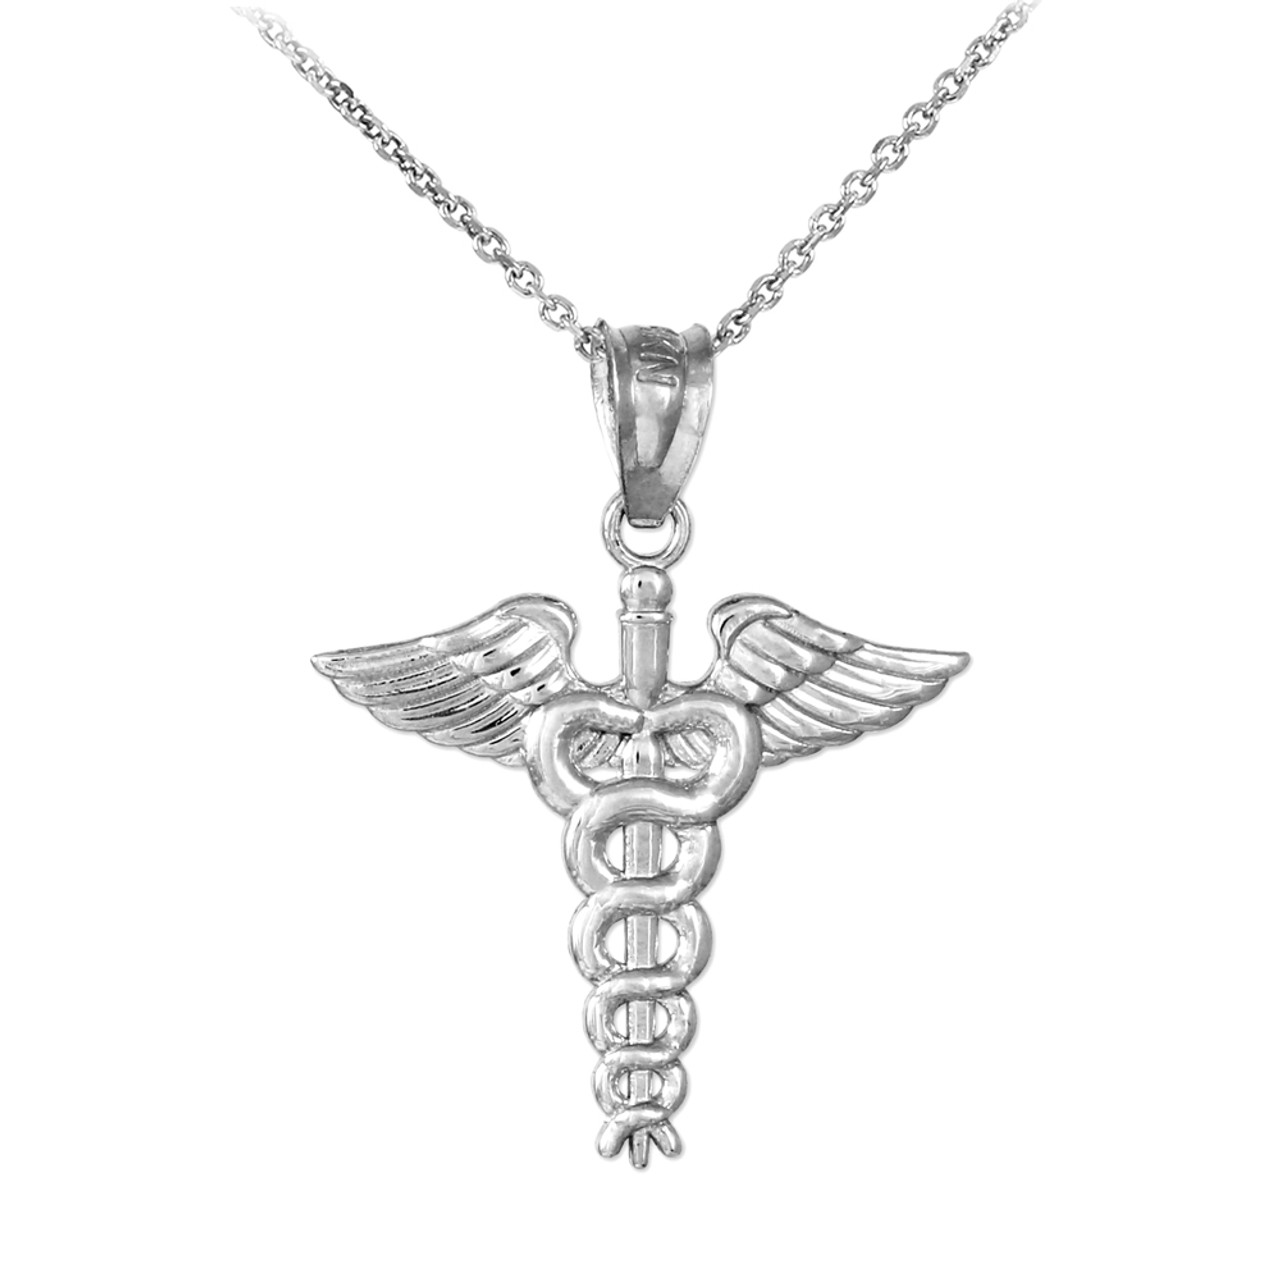 Silver Caduceus Charm Pendant Necklace